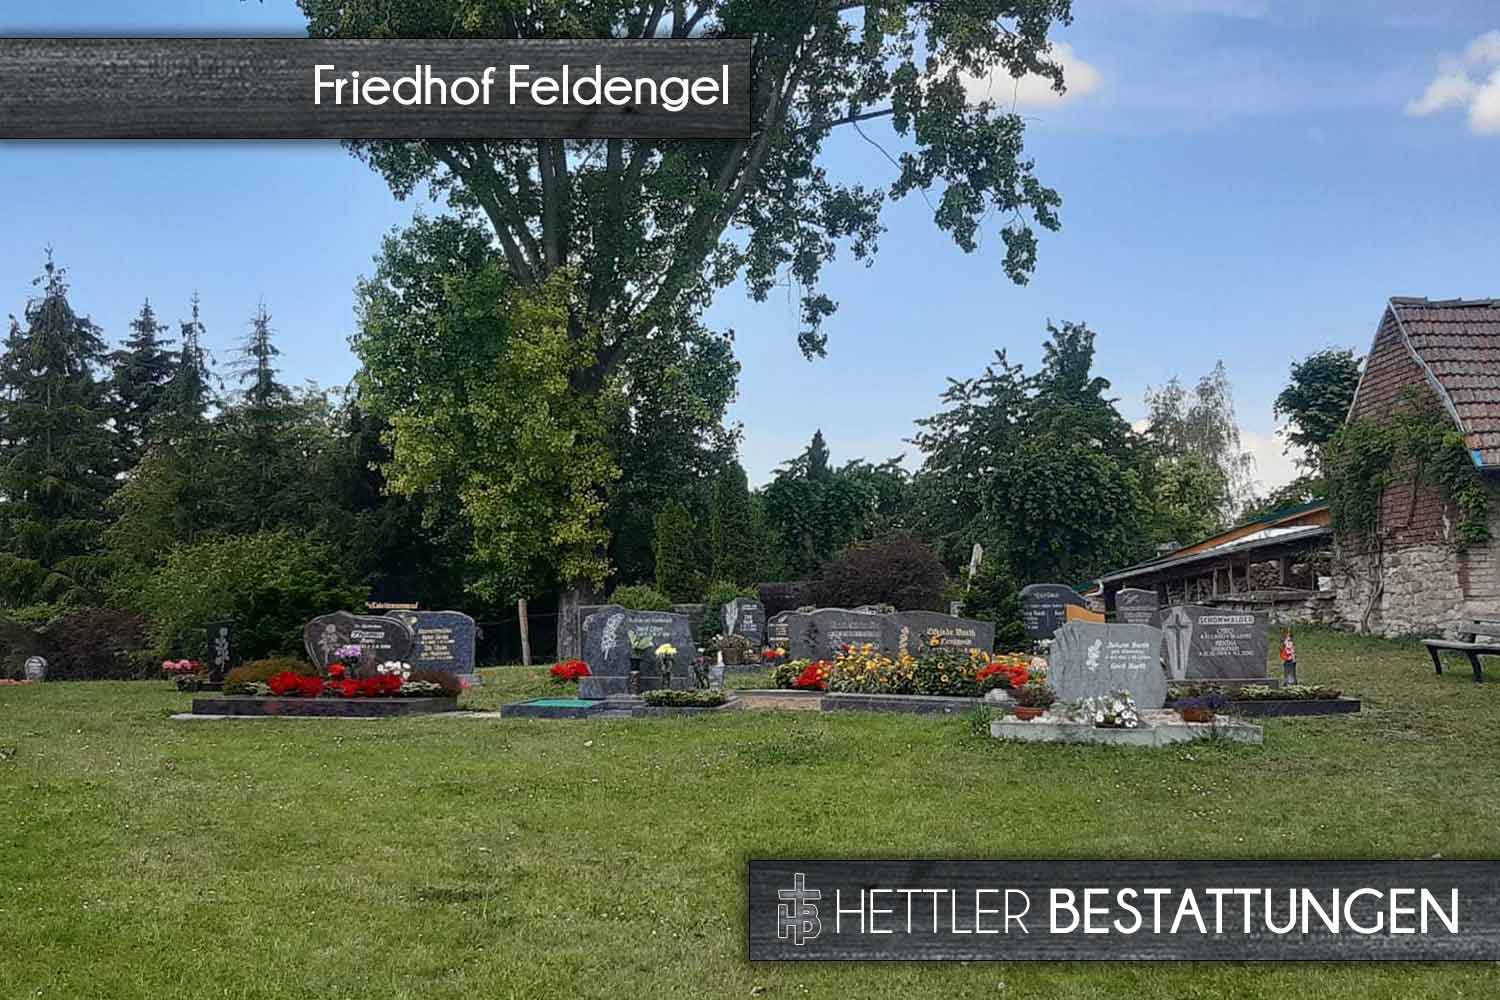 Friedhof in Feldengel. Ihr Ort des Abschieds mit Hettler Bestattungen.